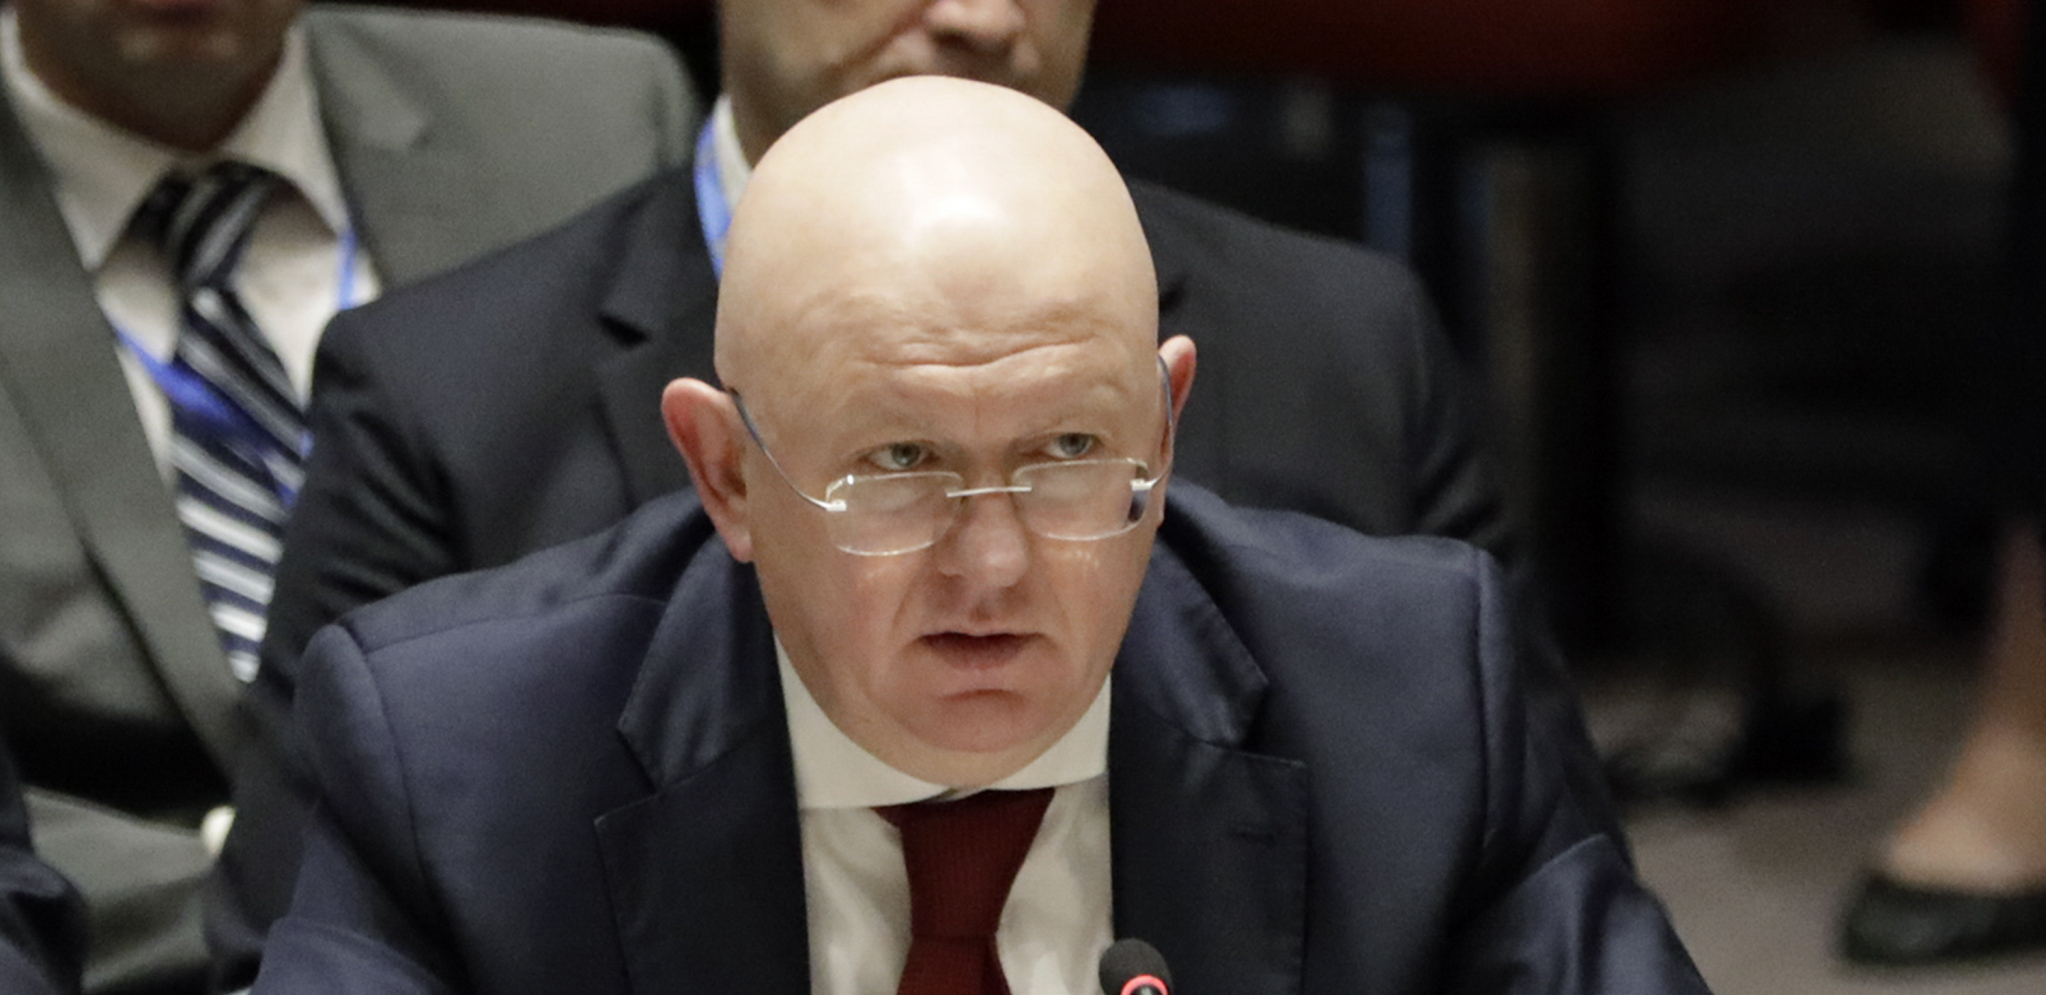 RUSIJA I KINA REKLE NE MOŽE Veto na američki nacrt rezolucije u Savetu bezbednosti UN